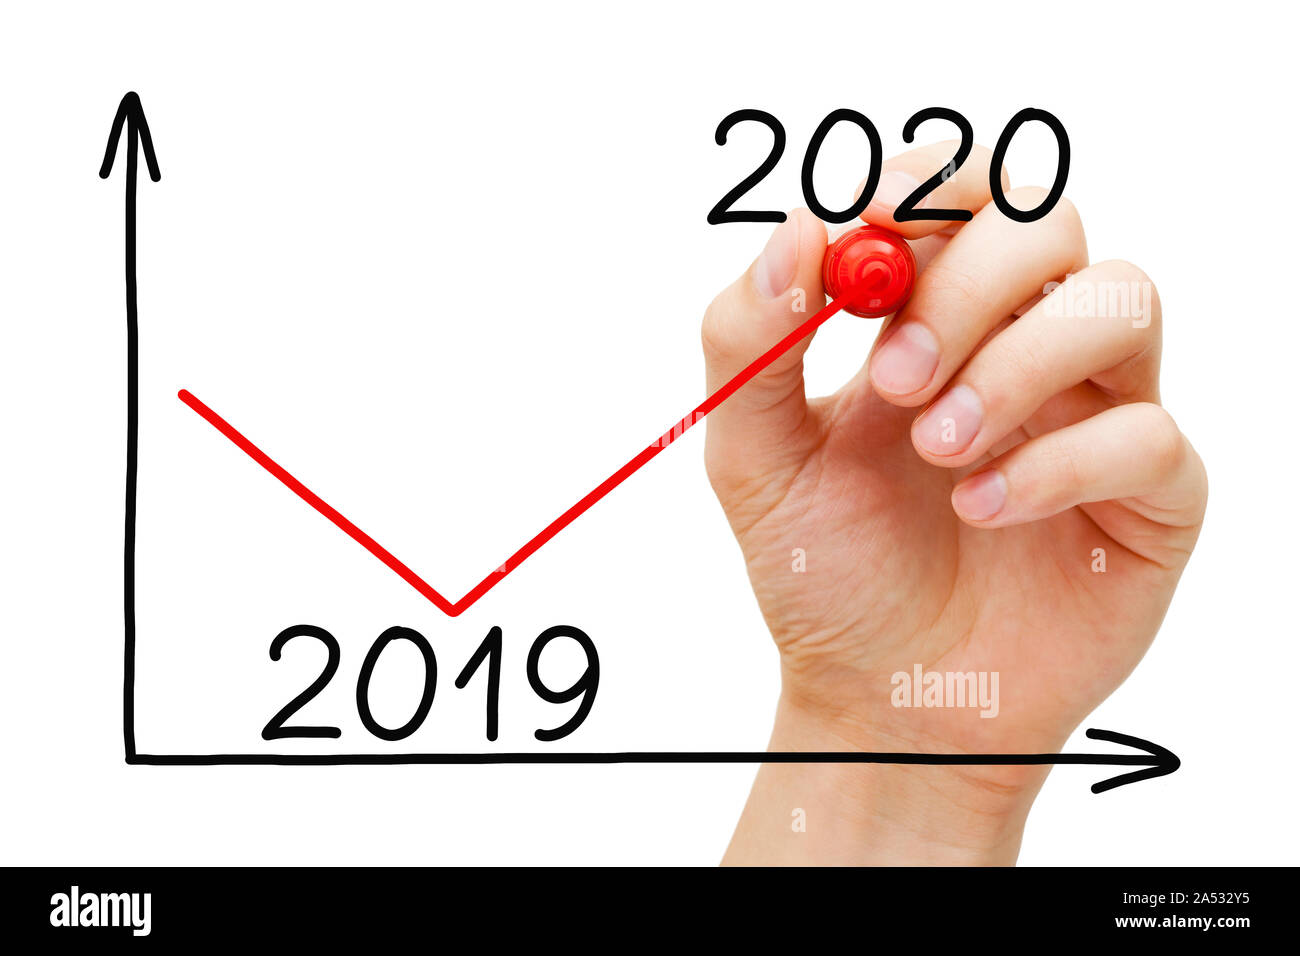 Disegno a mano di business recovery grafico per l'anno 2020 in confronto con il 2019 con marcatore sul panno trasparente bordo isolato su bianco. Foto Stock